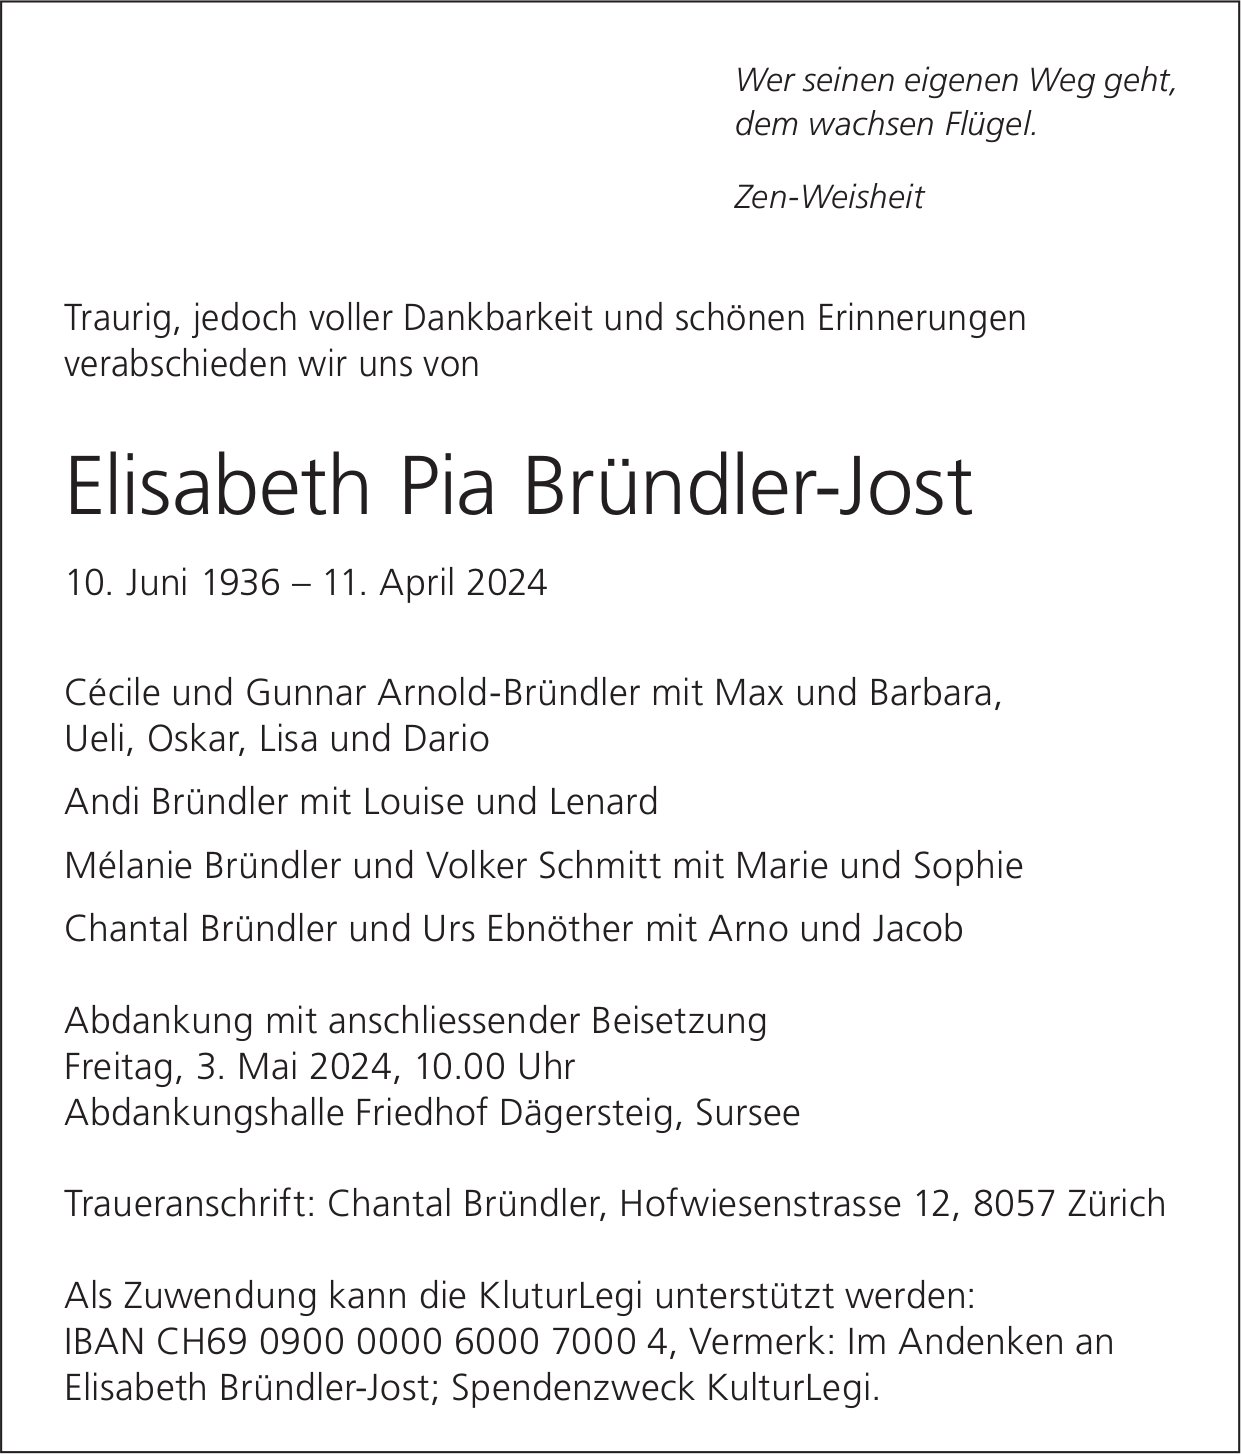 Bründler-Jost Elisabeth Pia, April 2024 / TA